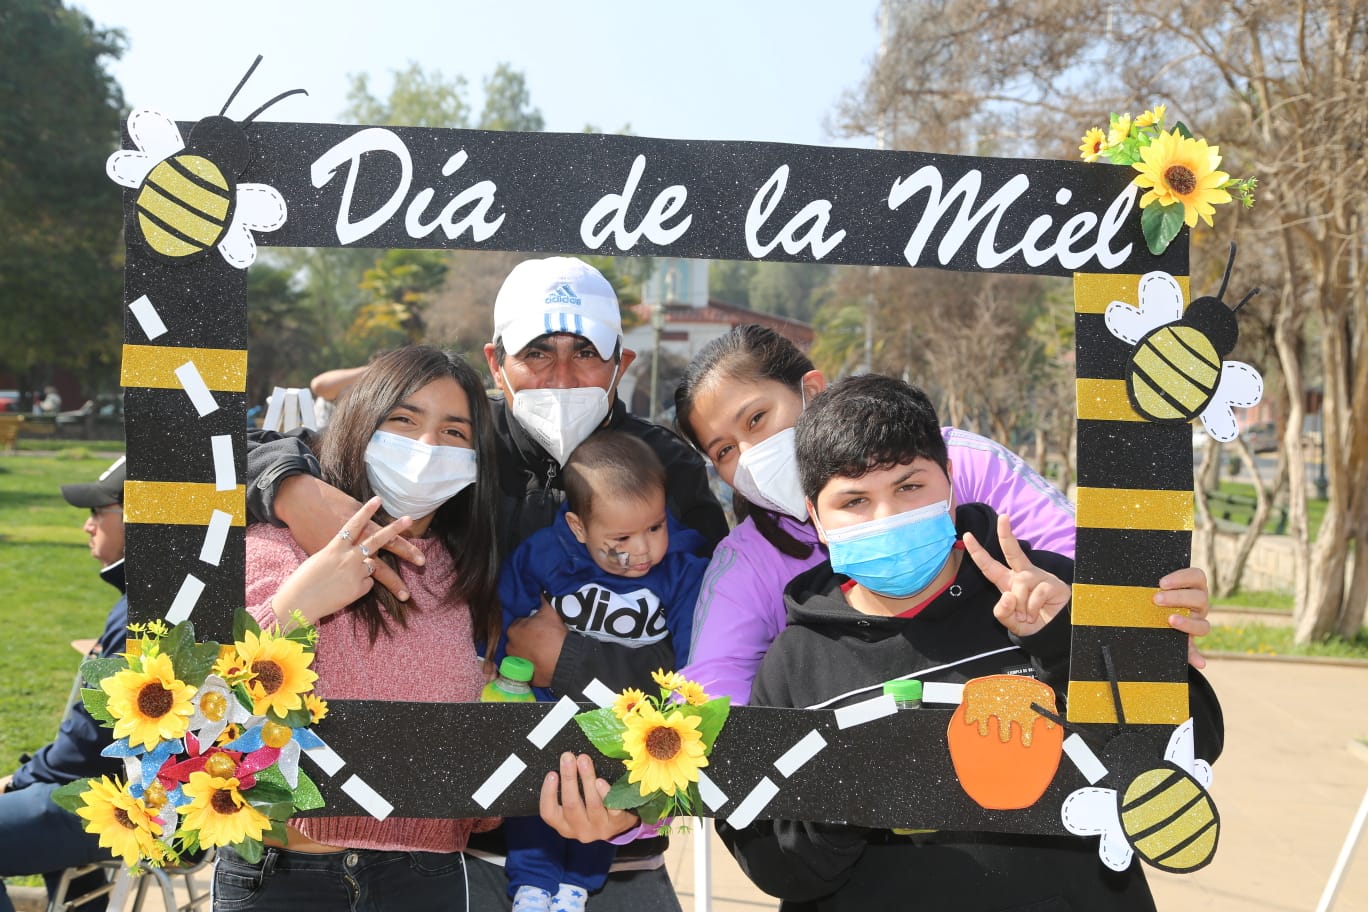 SAN ESTEBAN: Municipio de San Esteban y apicultores locales celebraron con éxito el día de la miel en la comuna